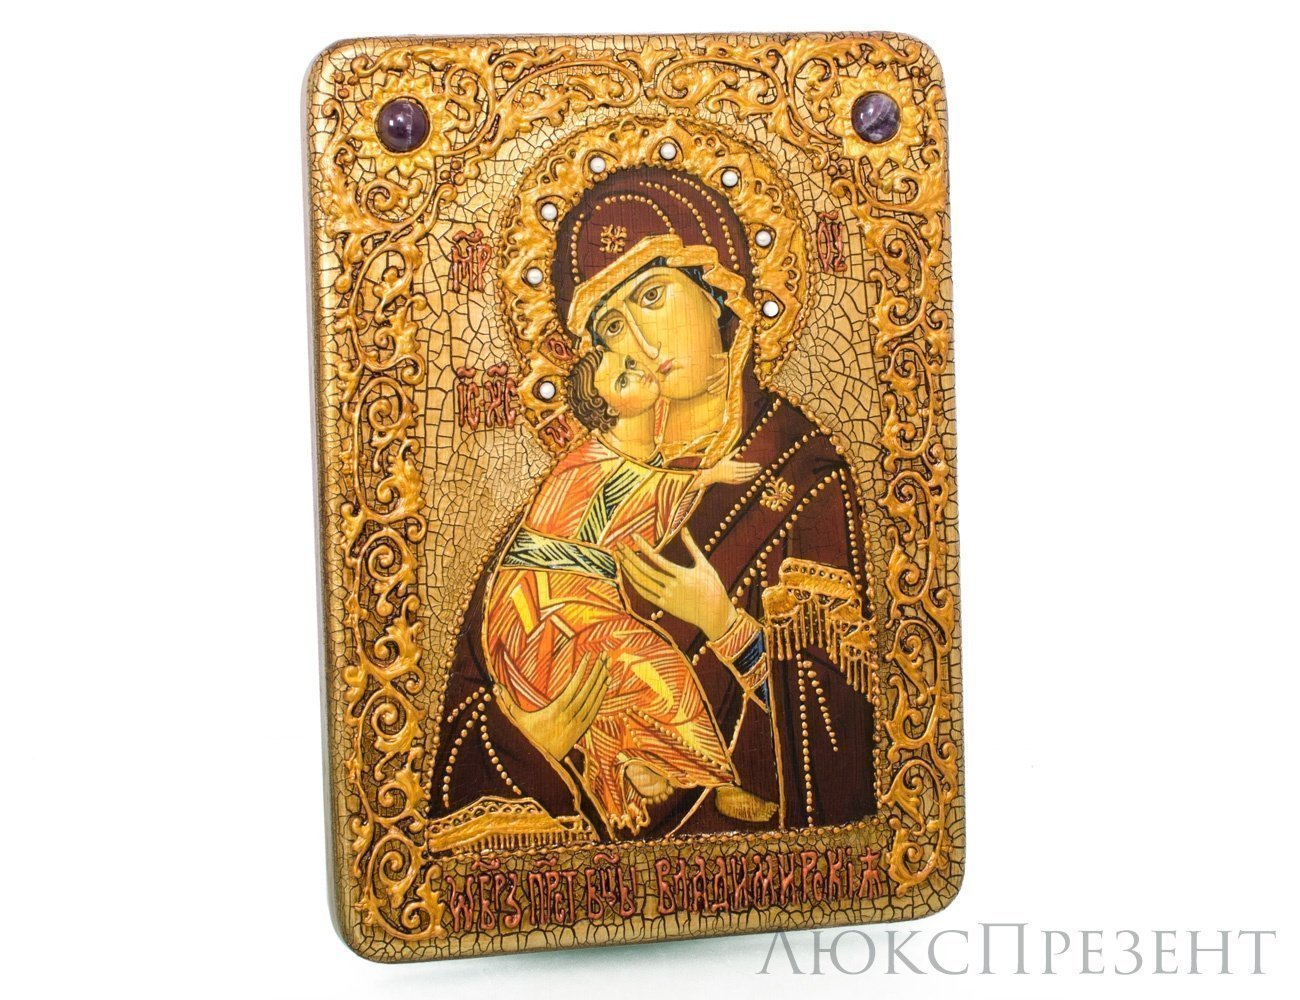 Подарочная икона "Образ Владимирской Божьей Матери"